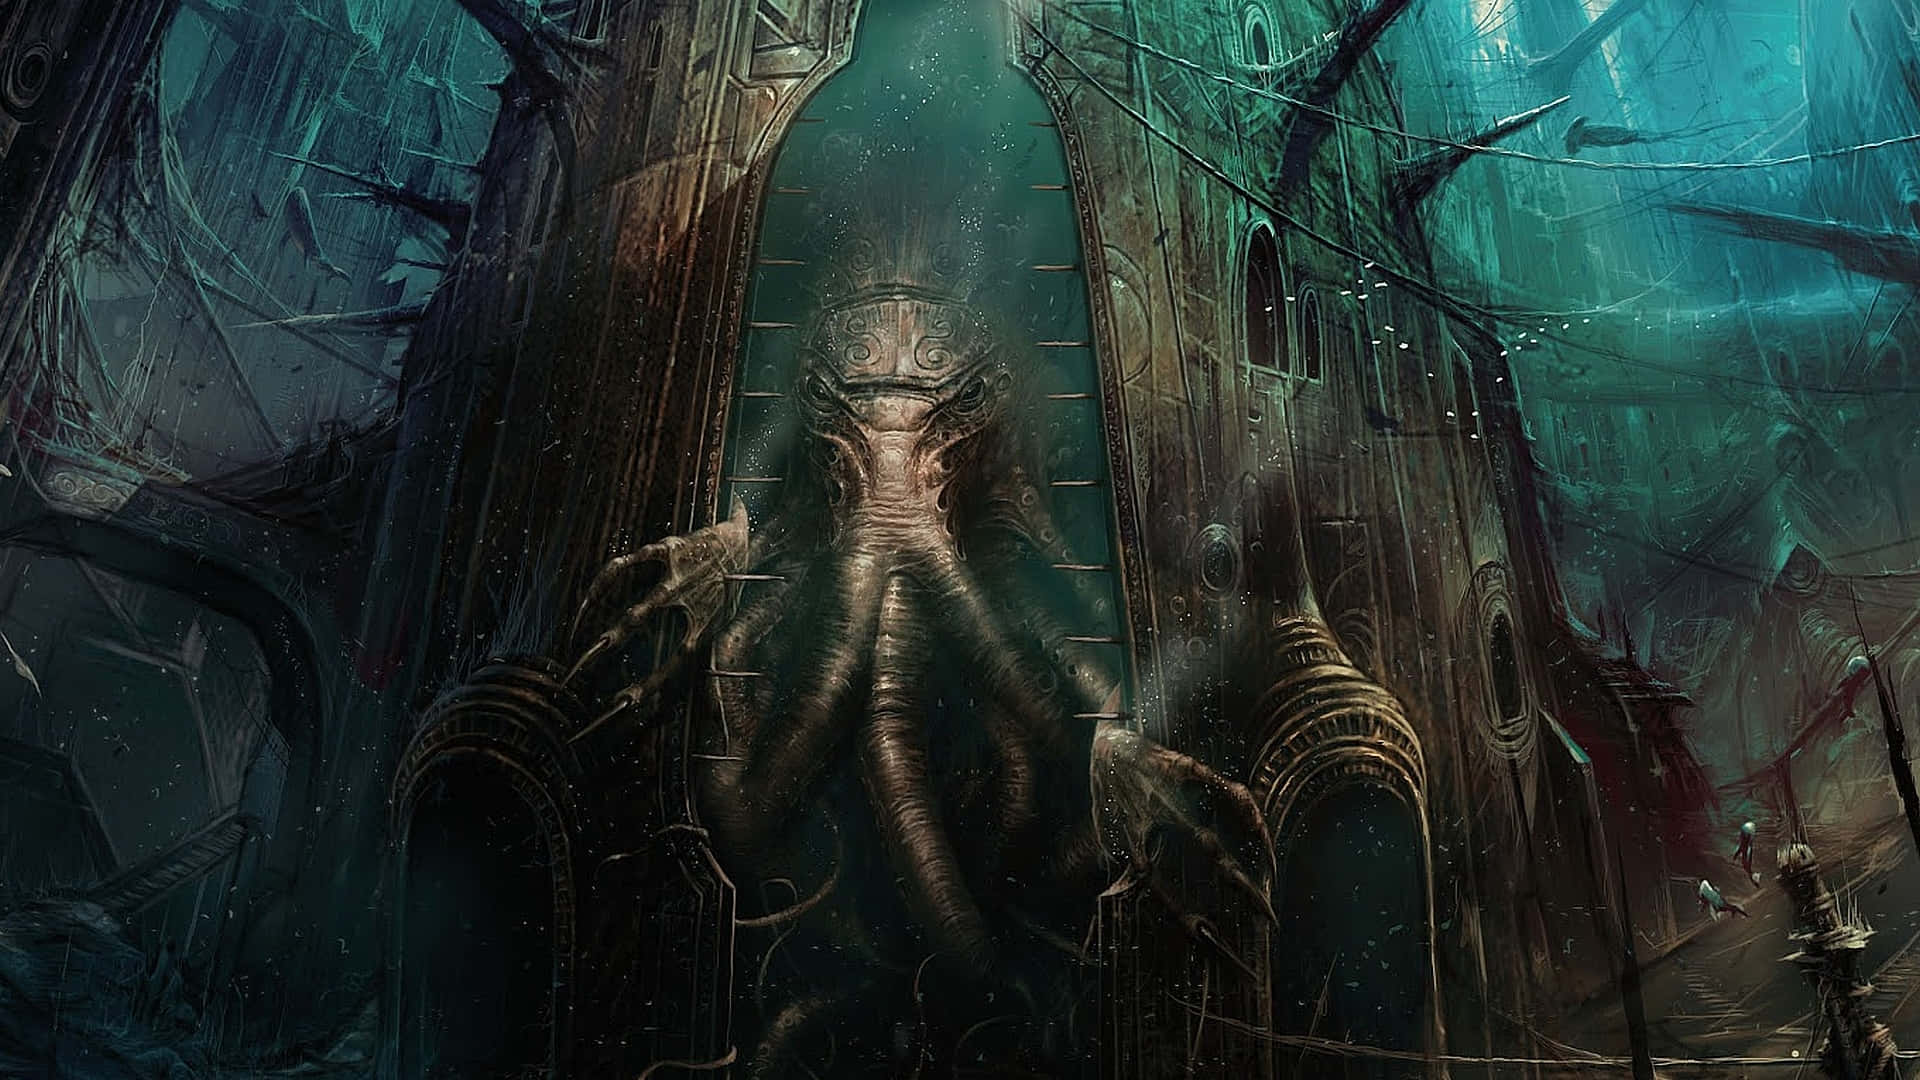 Unaimagen Oscura Y Sombría De Una De Las Criaturas Más Icónicas En La Ficción De H.p. Lovecraft: ¡el Poderoso Cthulhu!